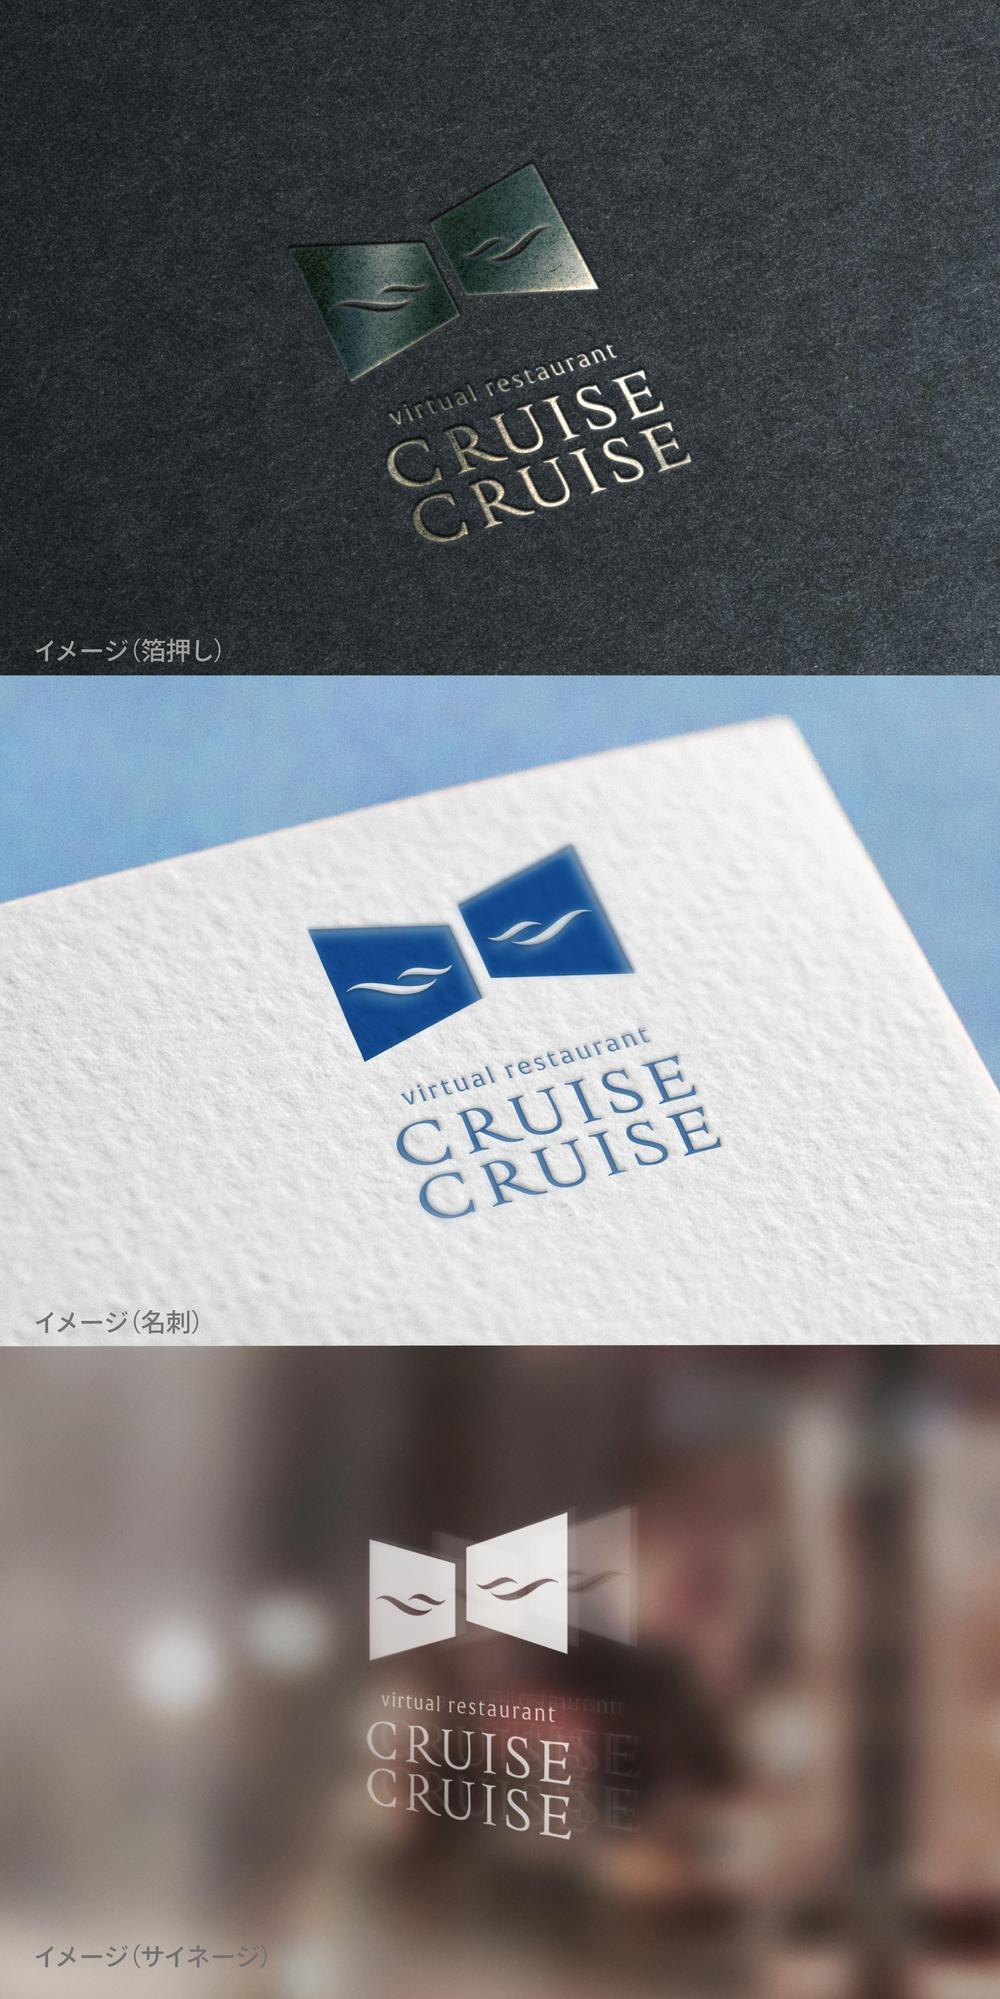 CRUISECRUISE_logo01_01.jpg